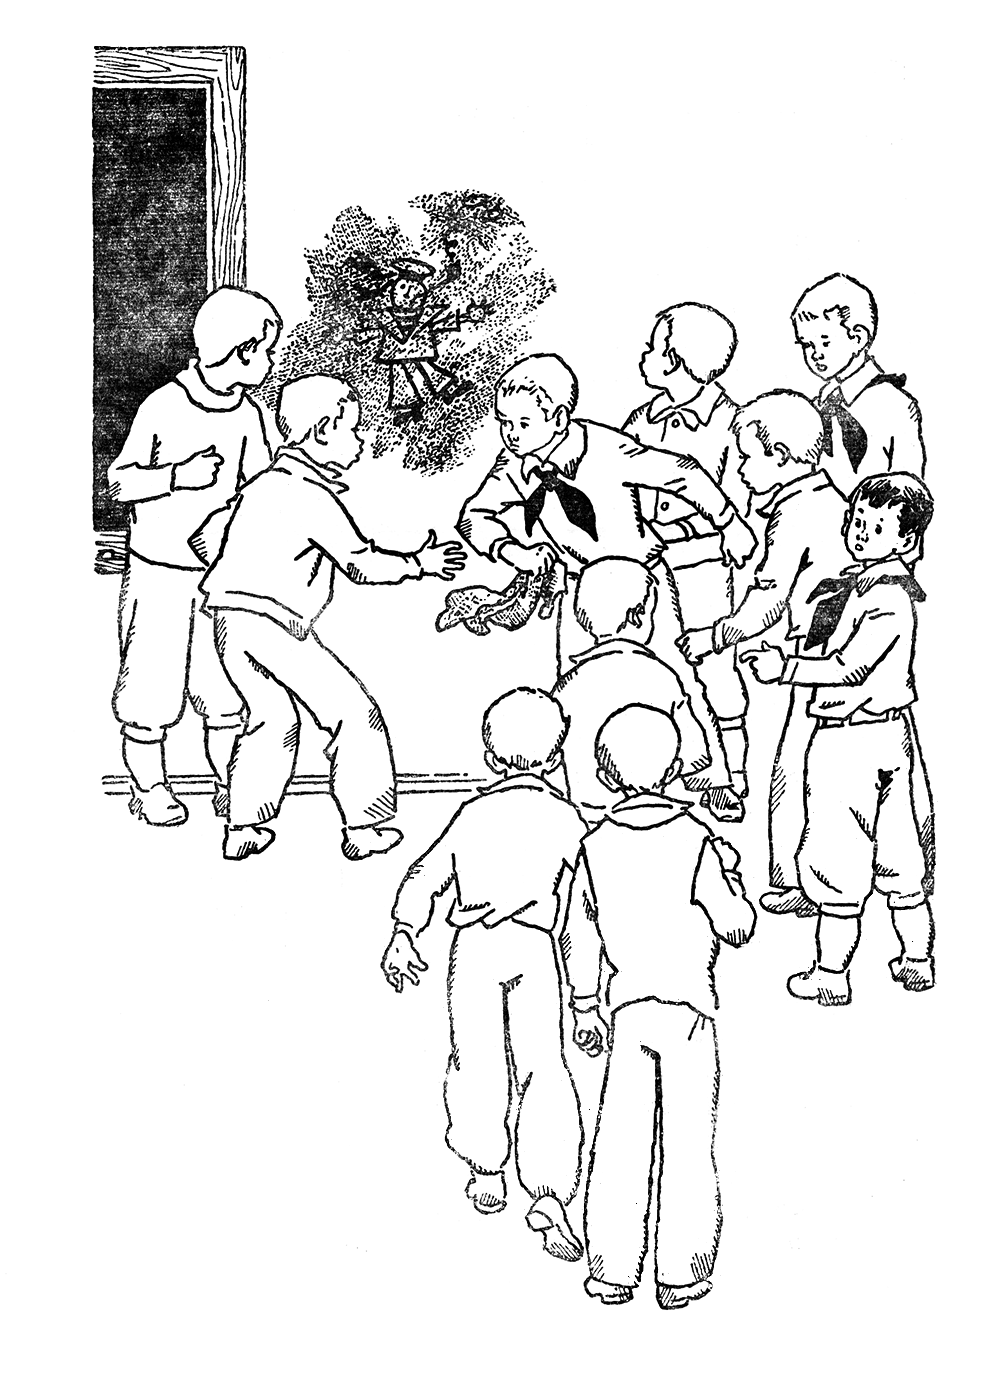 Лев Кассиль у классной доски иллюстрации к рассказу